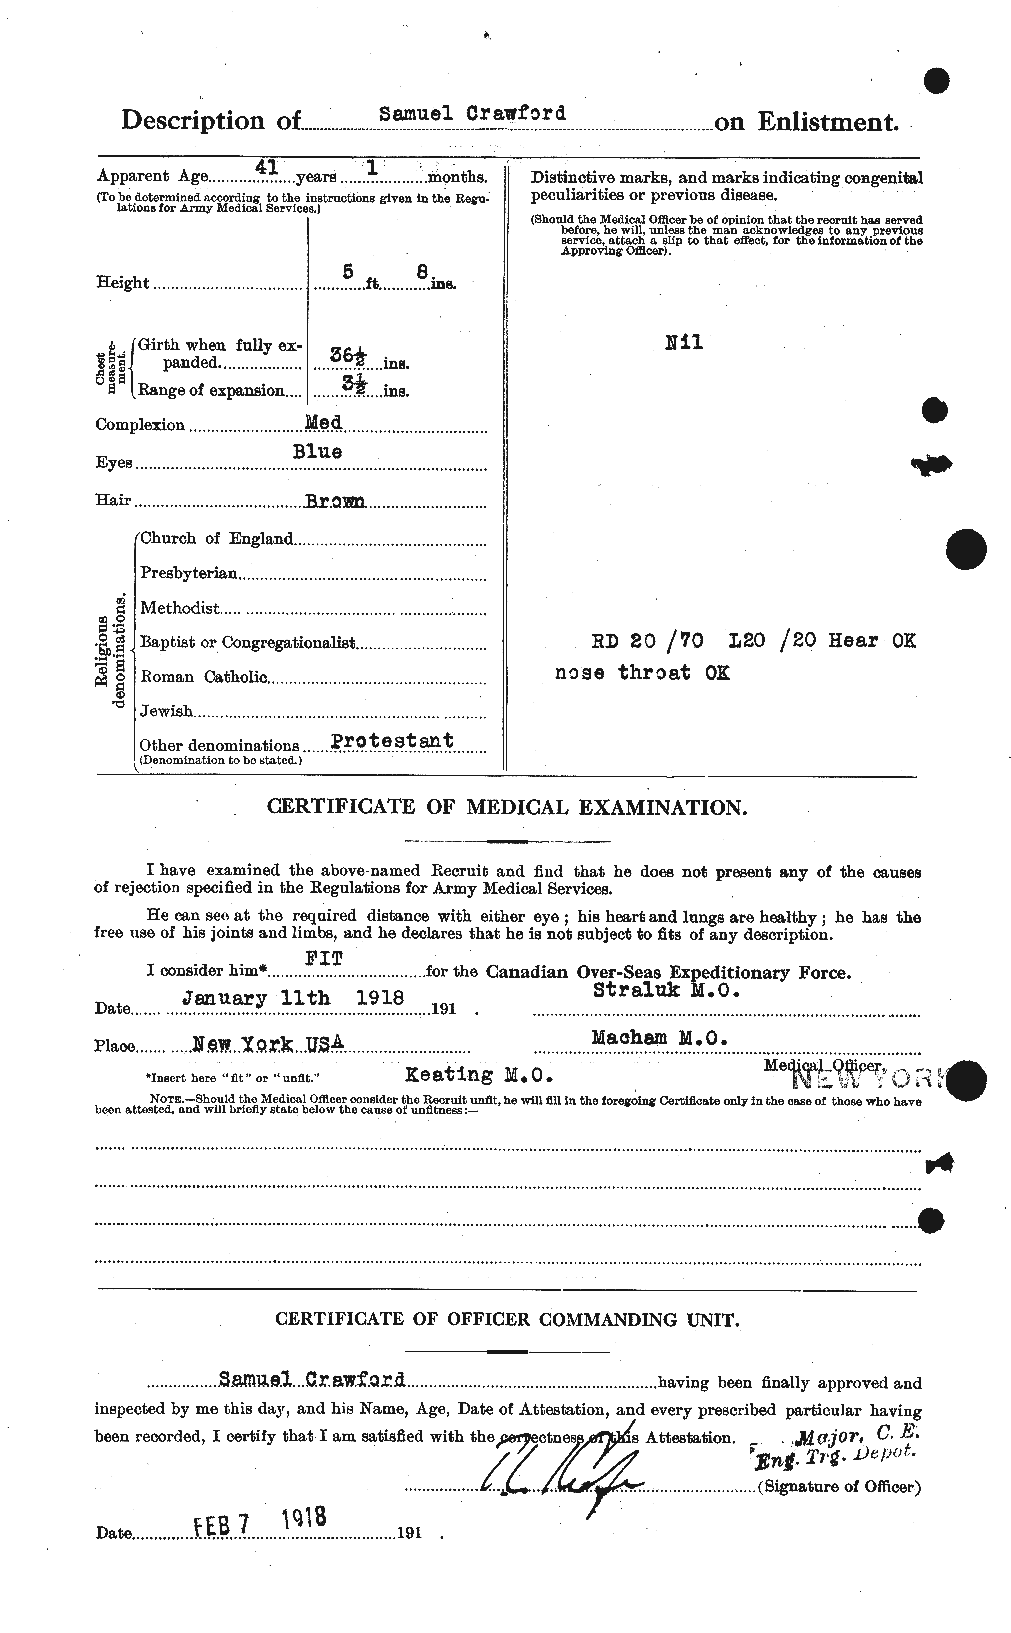 Dossiers du Personnel de la Première Guerre mondiale - CEC 061377b